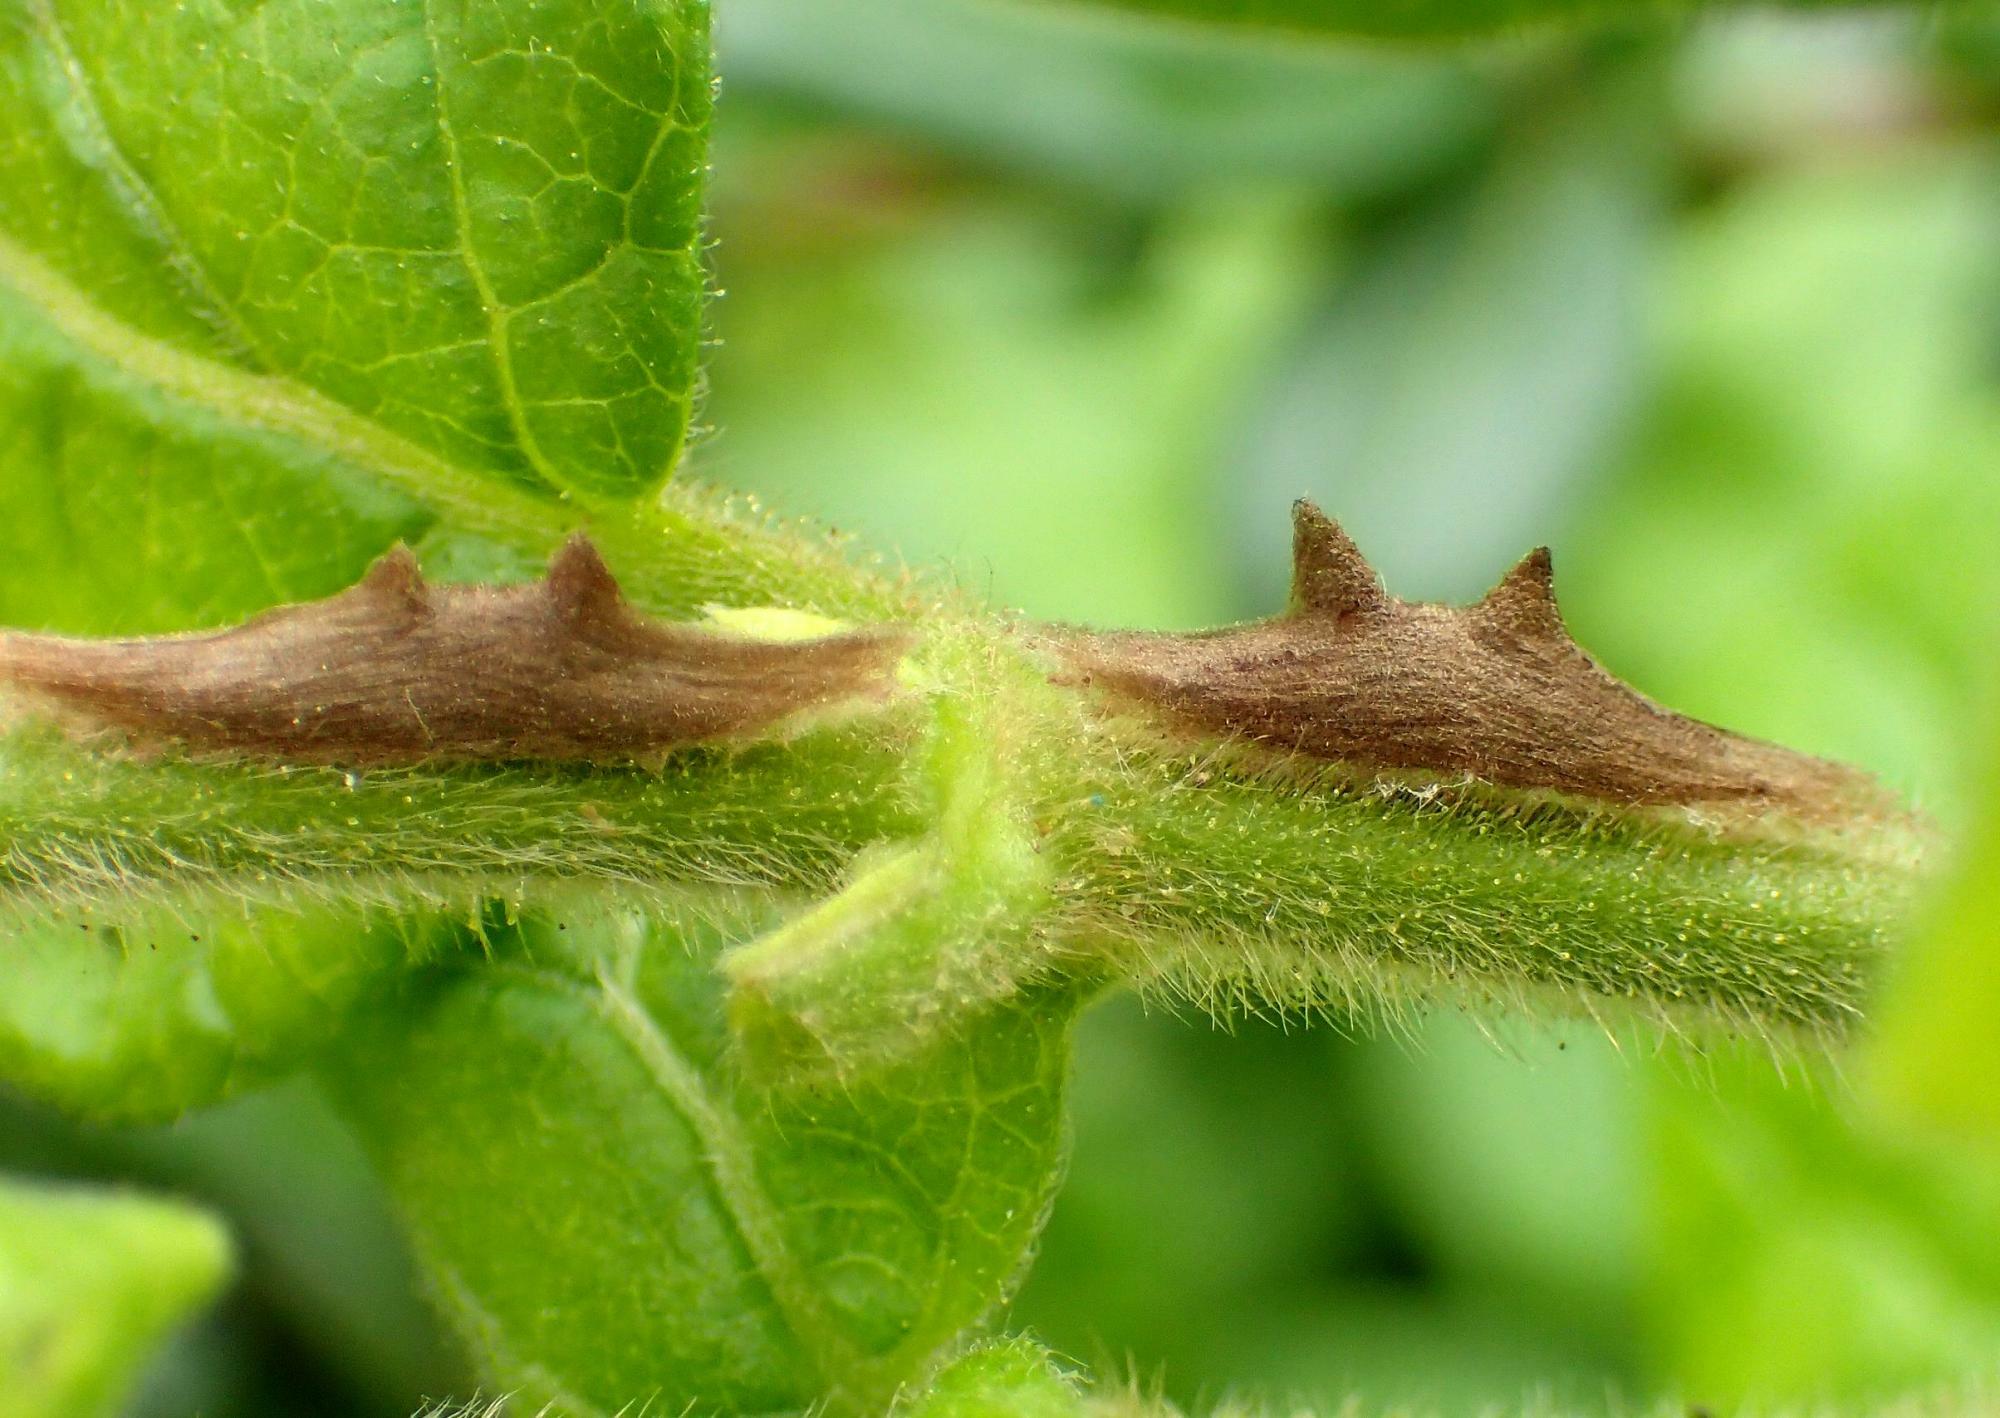 ２つ並んだスイカズラクチブサガの繭。茎から４本のトゲが生えているように見える。